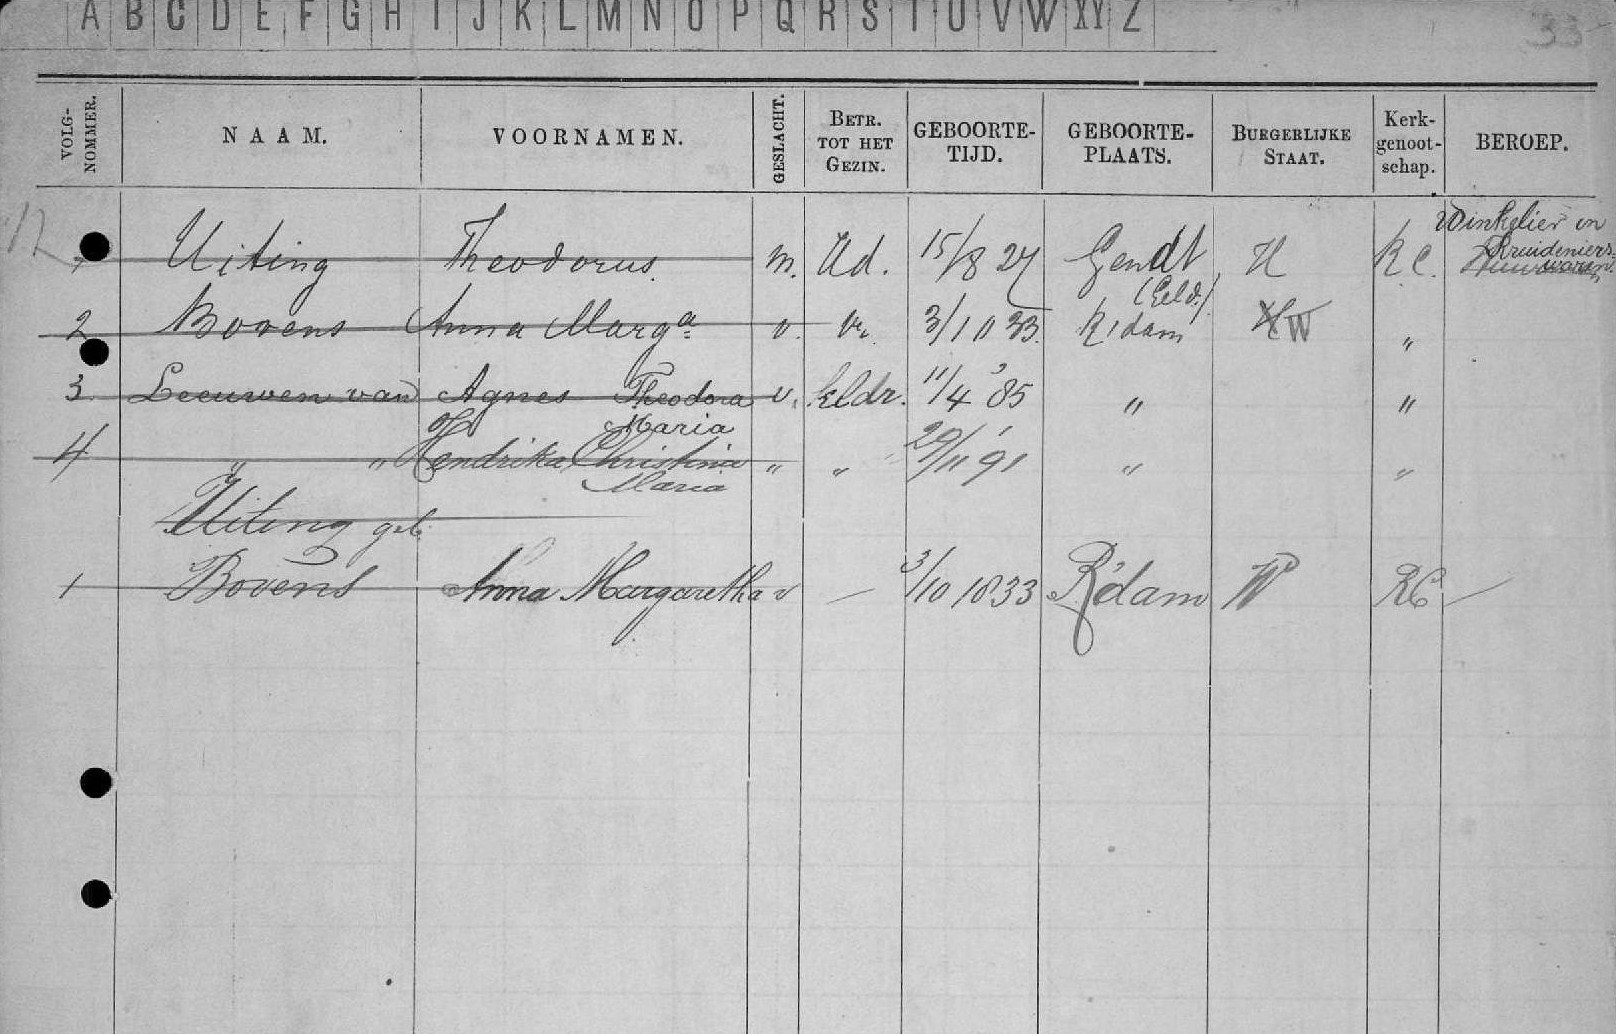  - bevolkingsregister Rotterdam 1880-1941 - Agnes Theodora Maria van Leeuwen (deel 1)